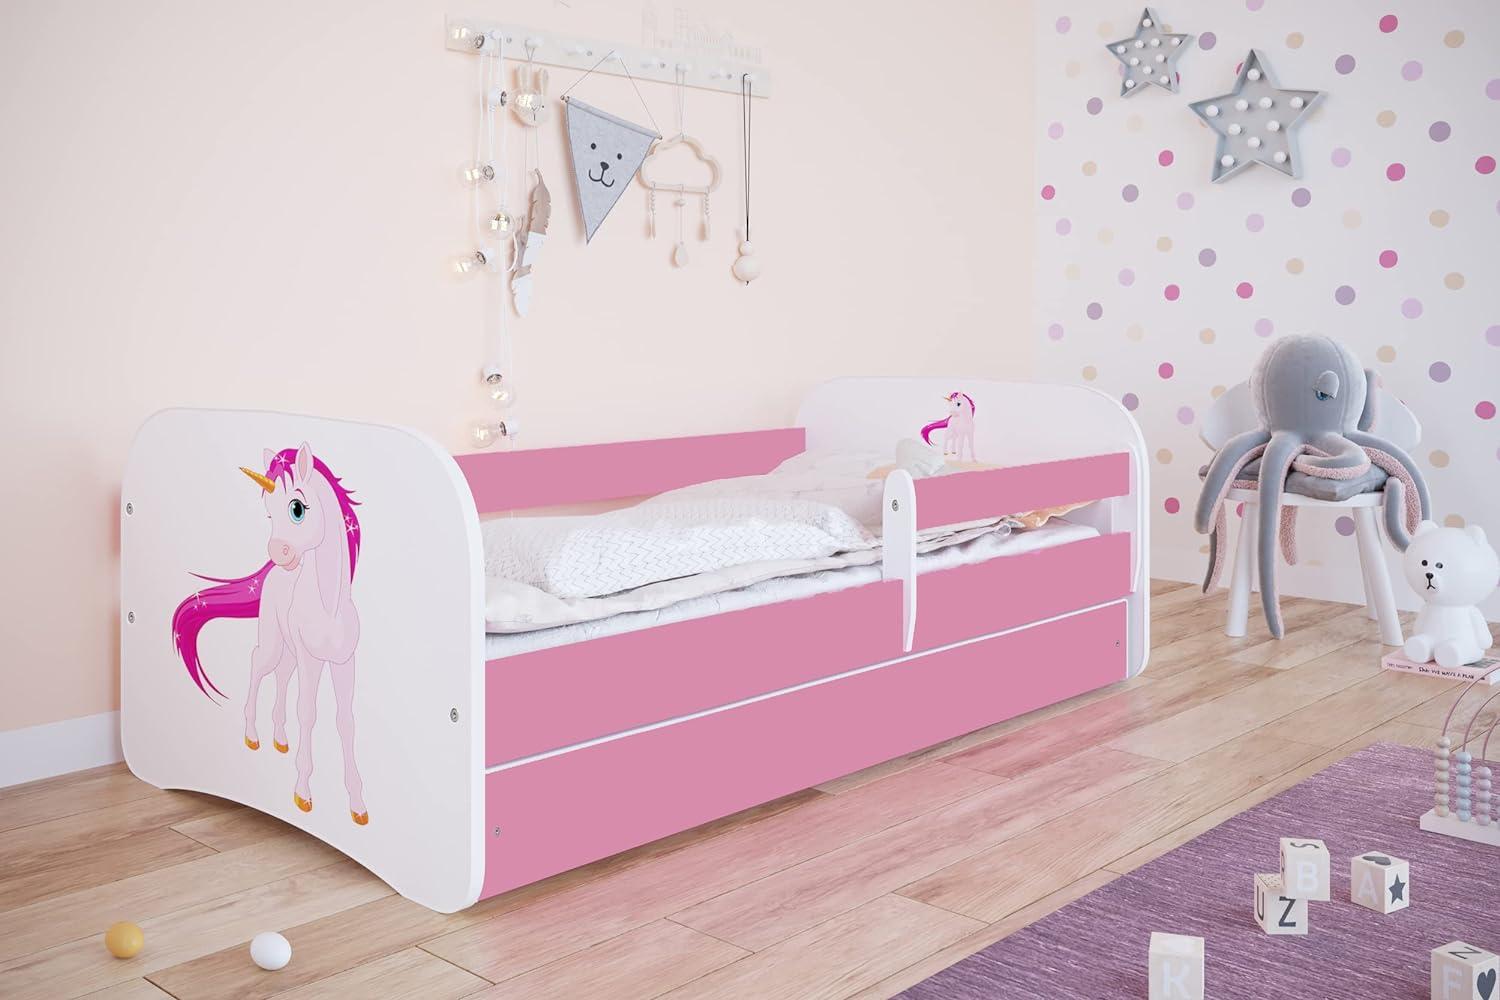 Kocot Kids 'Einhorn' Einzelbett pink/weiß 80x160 cm inkl. Rausfallschutz, Matratze, Schublade und Lattenrost Bild 1